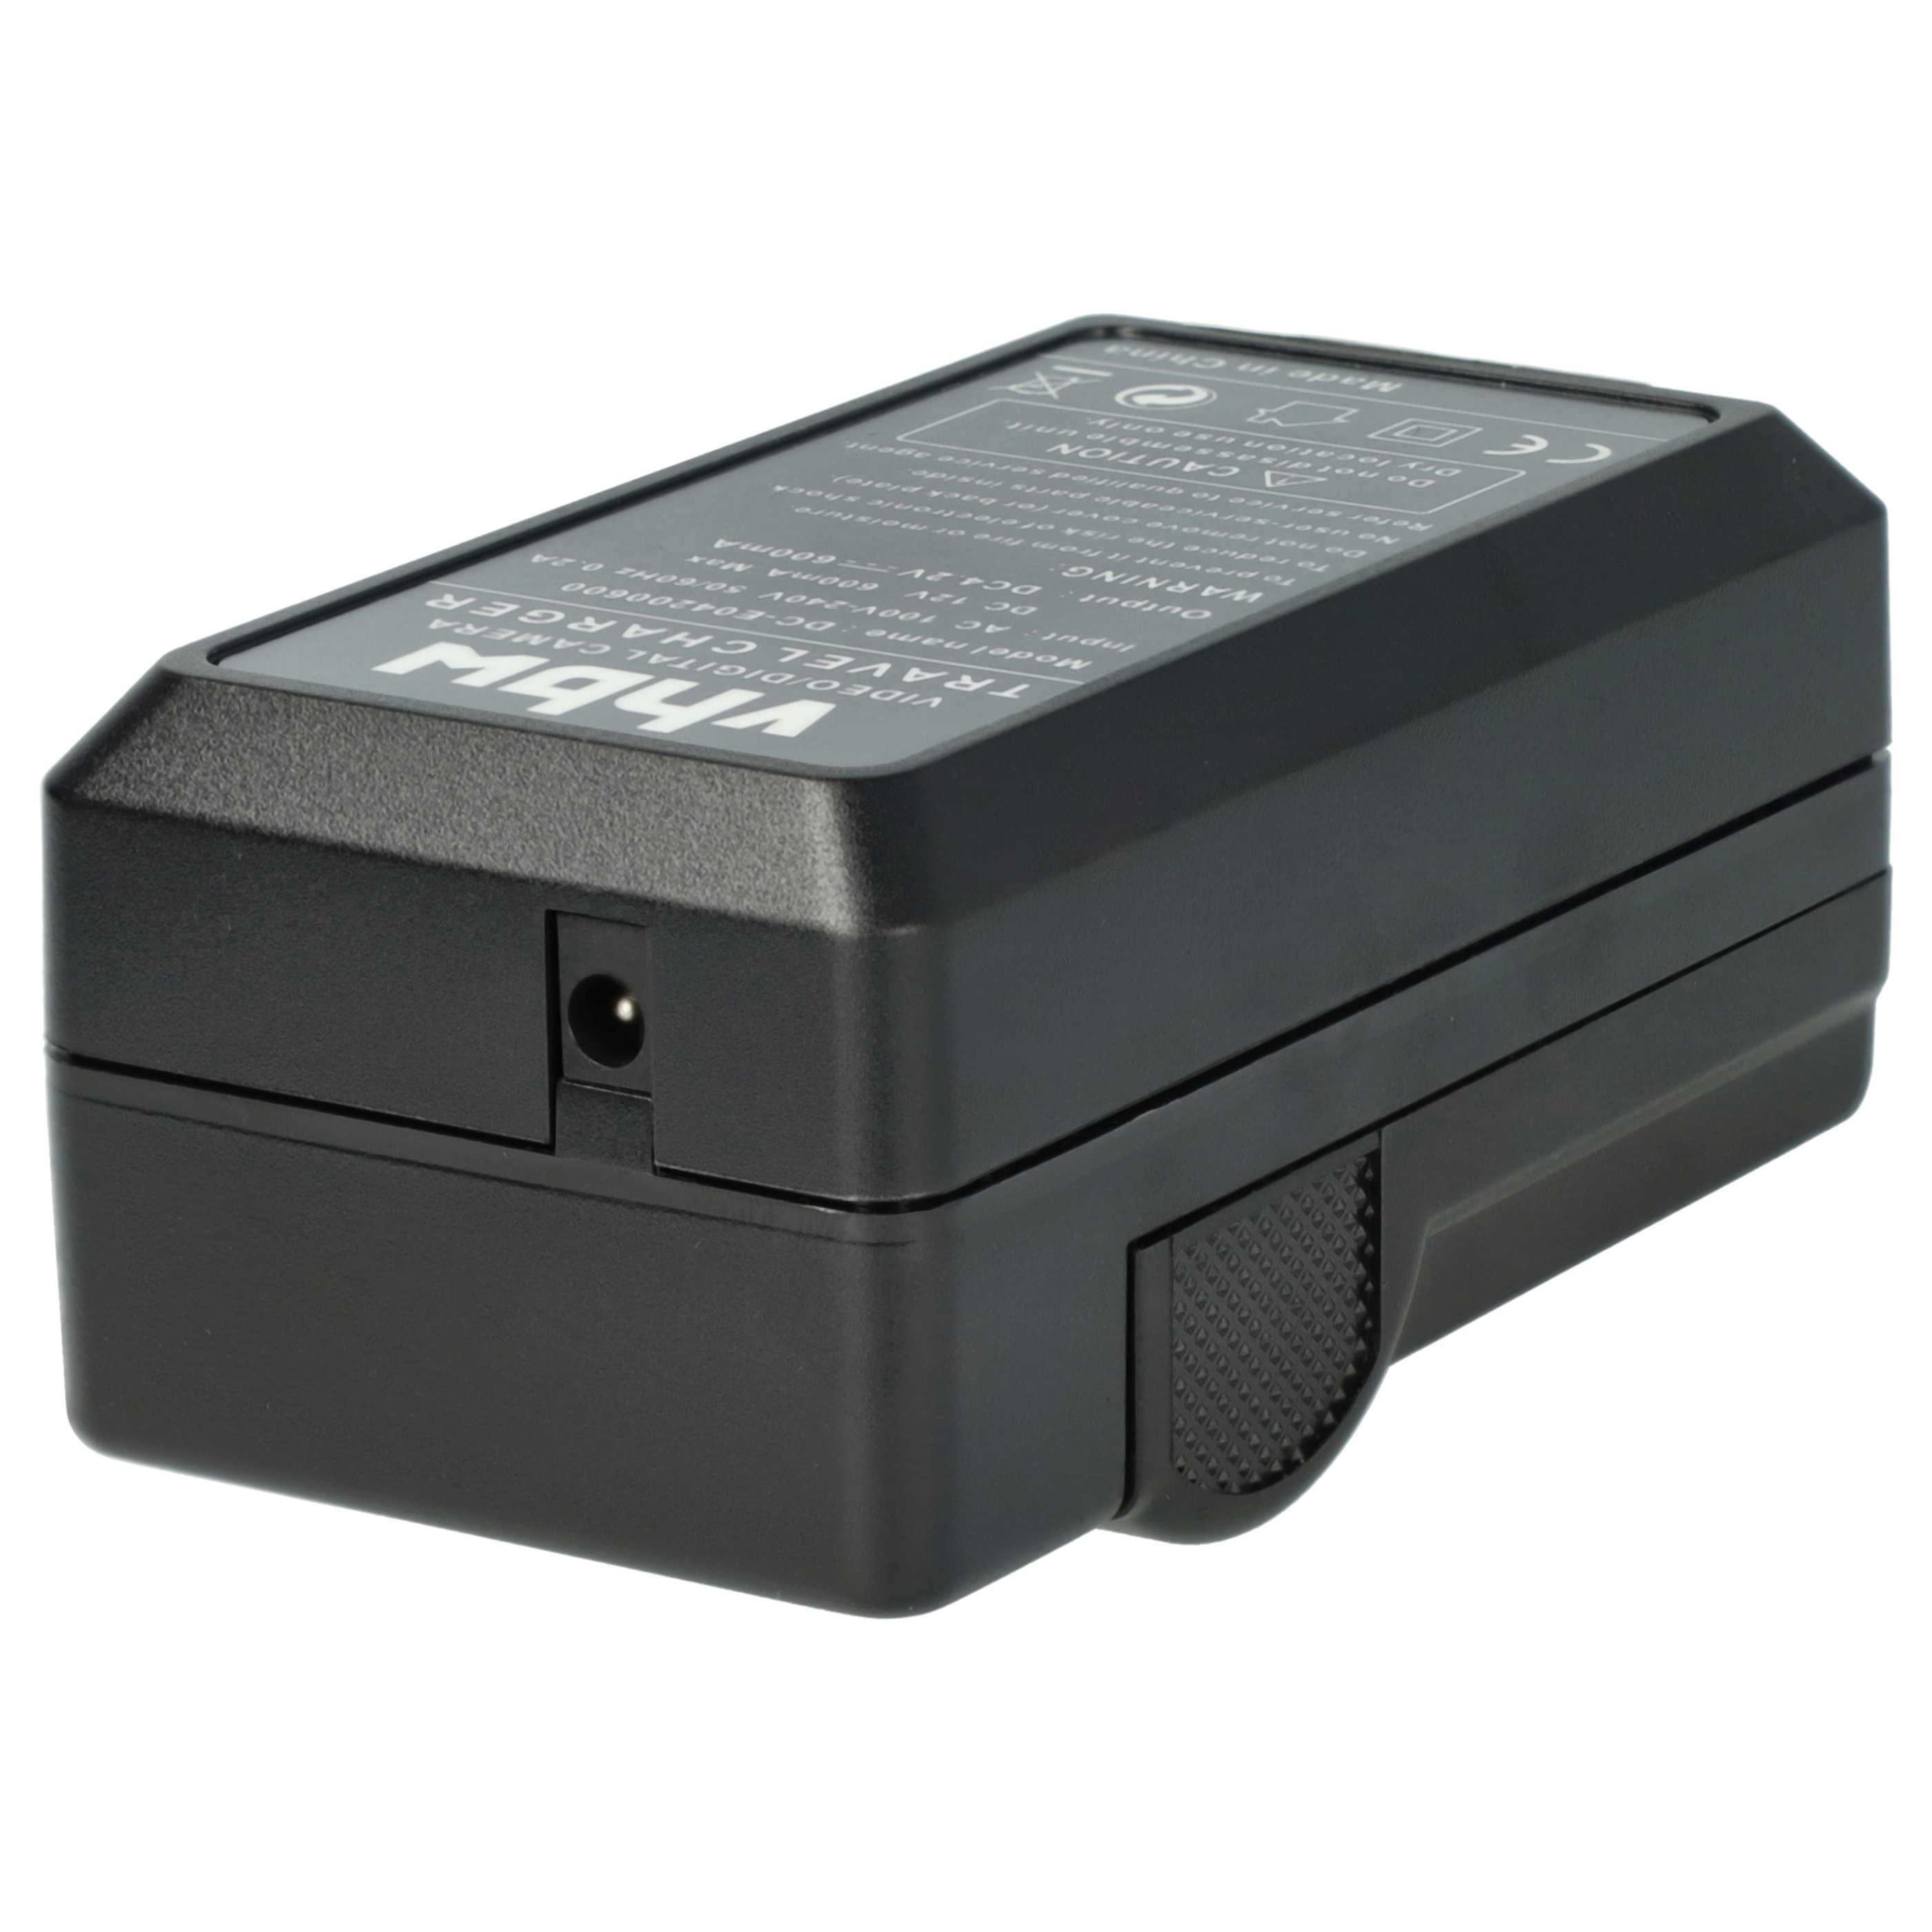 Akku Ladegerät passend für Sony NP-BX1 Kamera u.a. - 0,6 A, 4,2 V